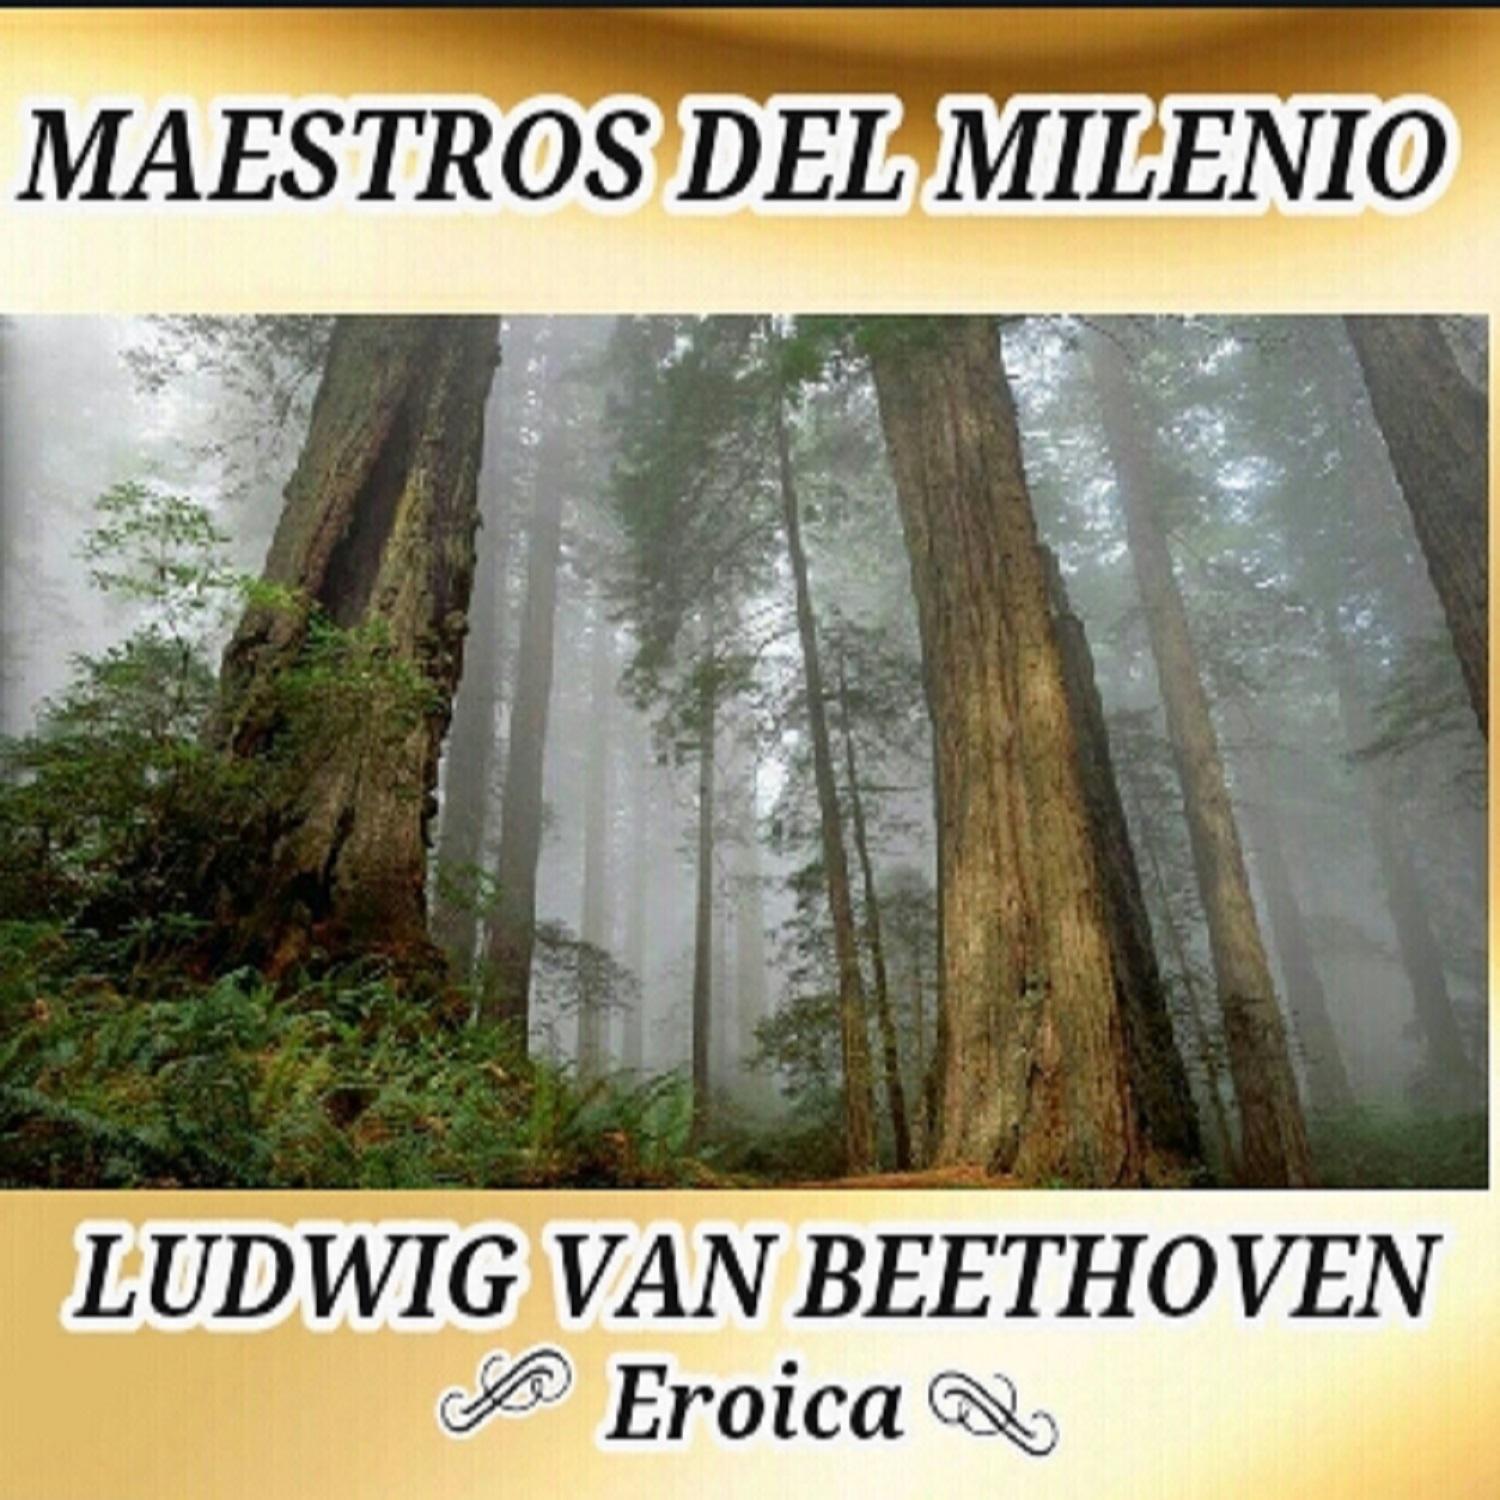 Ludwig van Beethoven, Eroica - Maestros del Milenio专辑